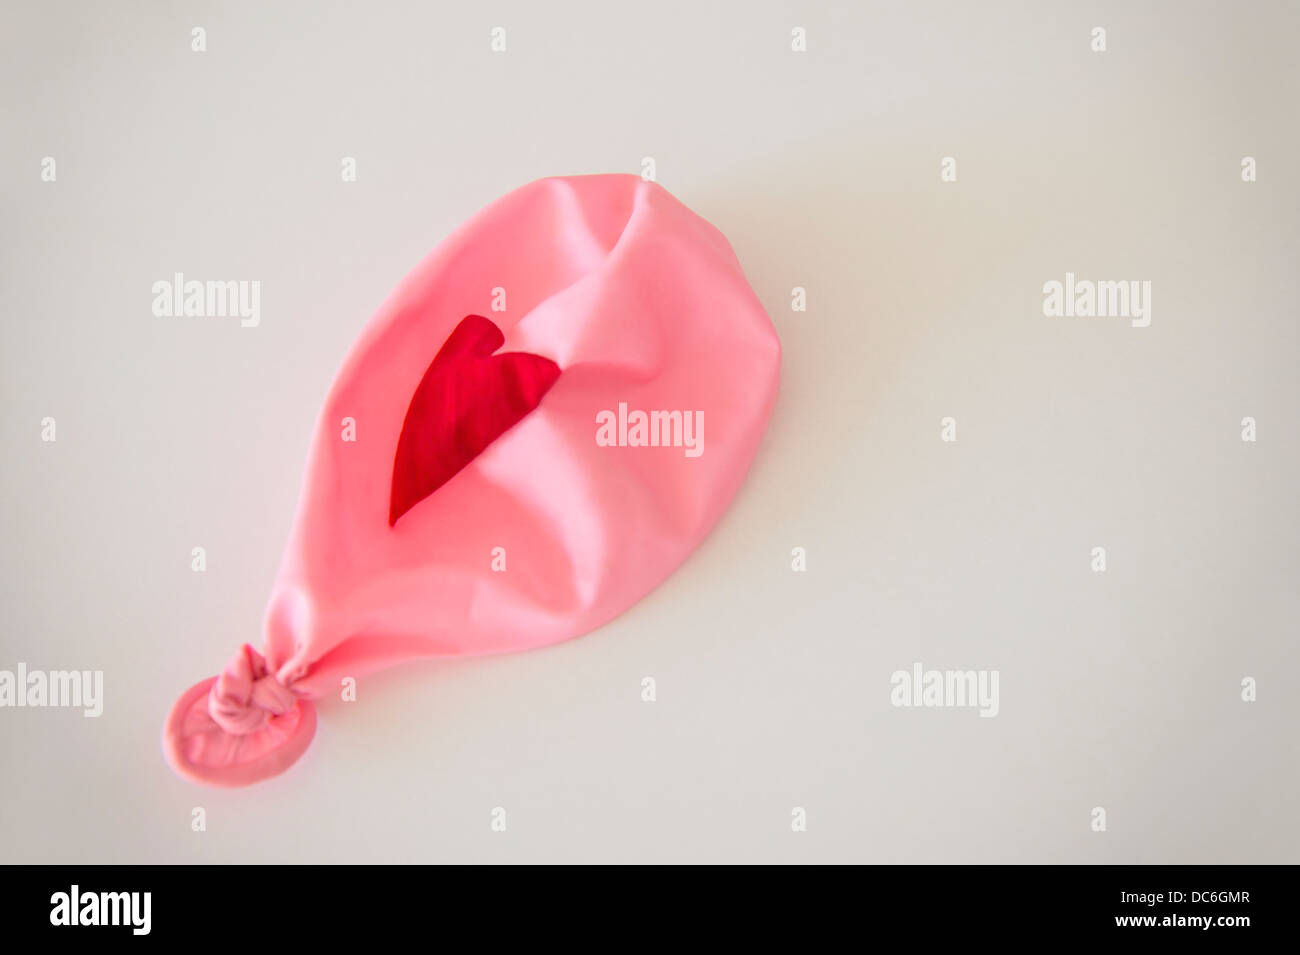 Studio Shot of deflated pink balloon Stock Photo